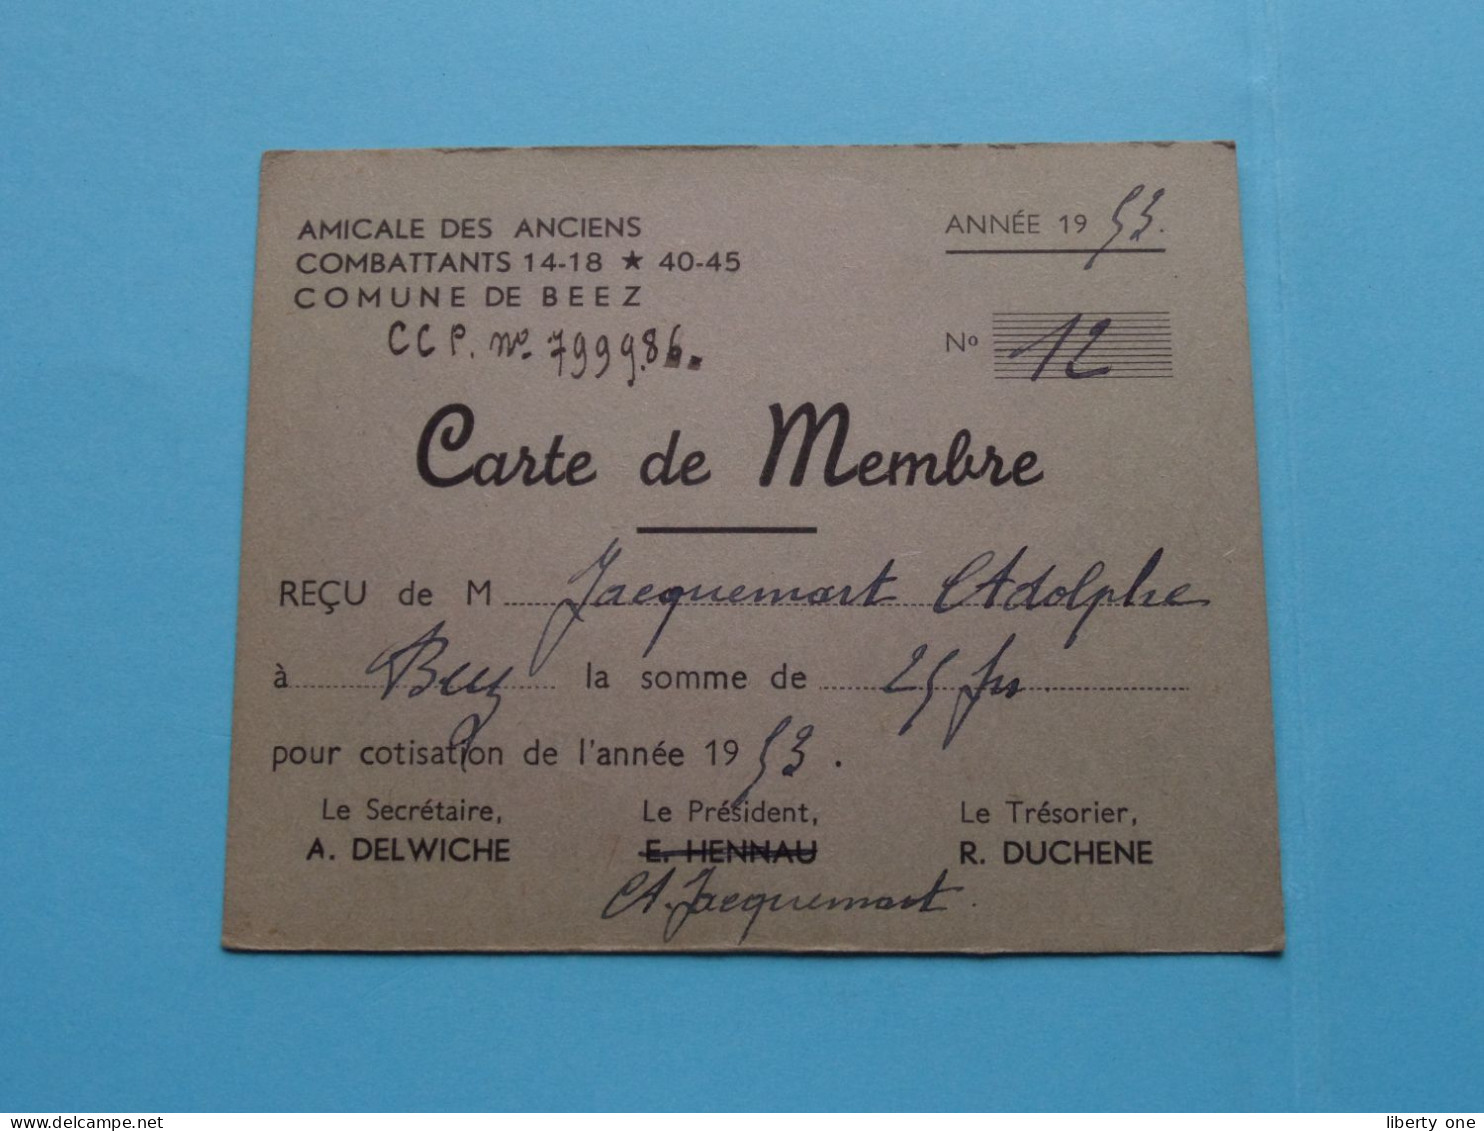 Am. Des Anciens COMBATTANTS 14-18 * 45-45 Com. De BEEZ ( Zie / Voir Scans ) 1953 ( Carte De Membre ) ! - Lidmaatschapskaarten